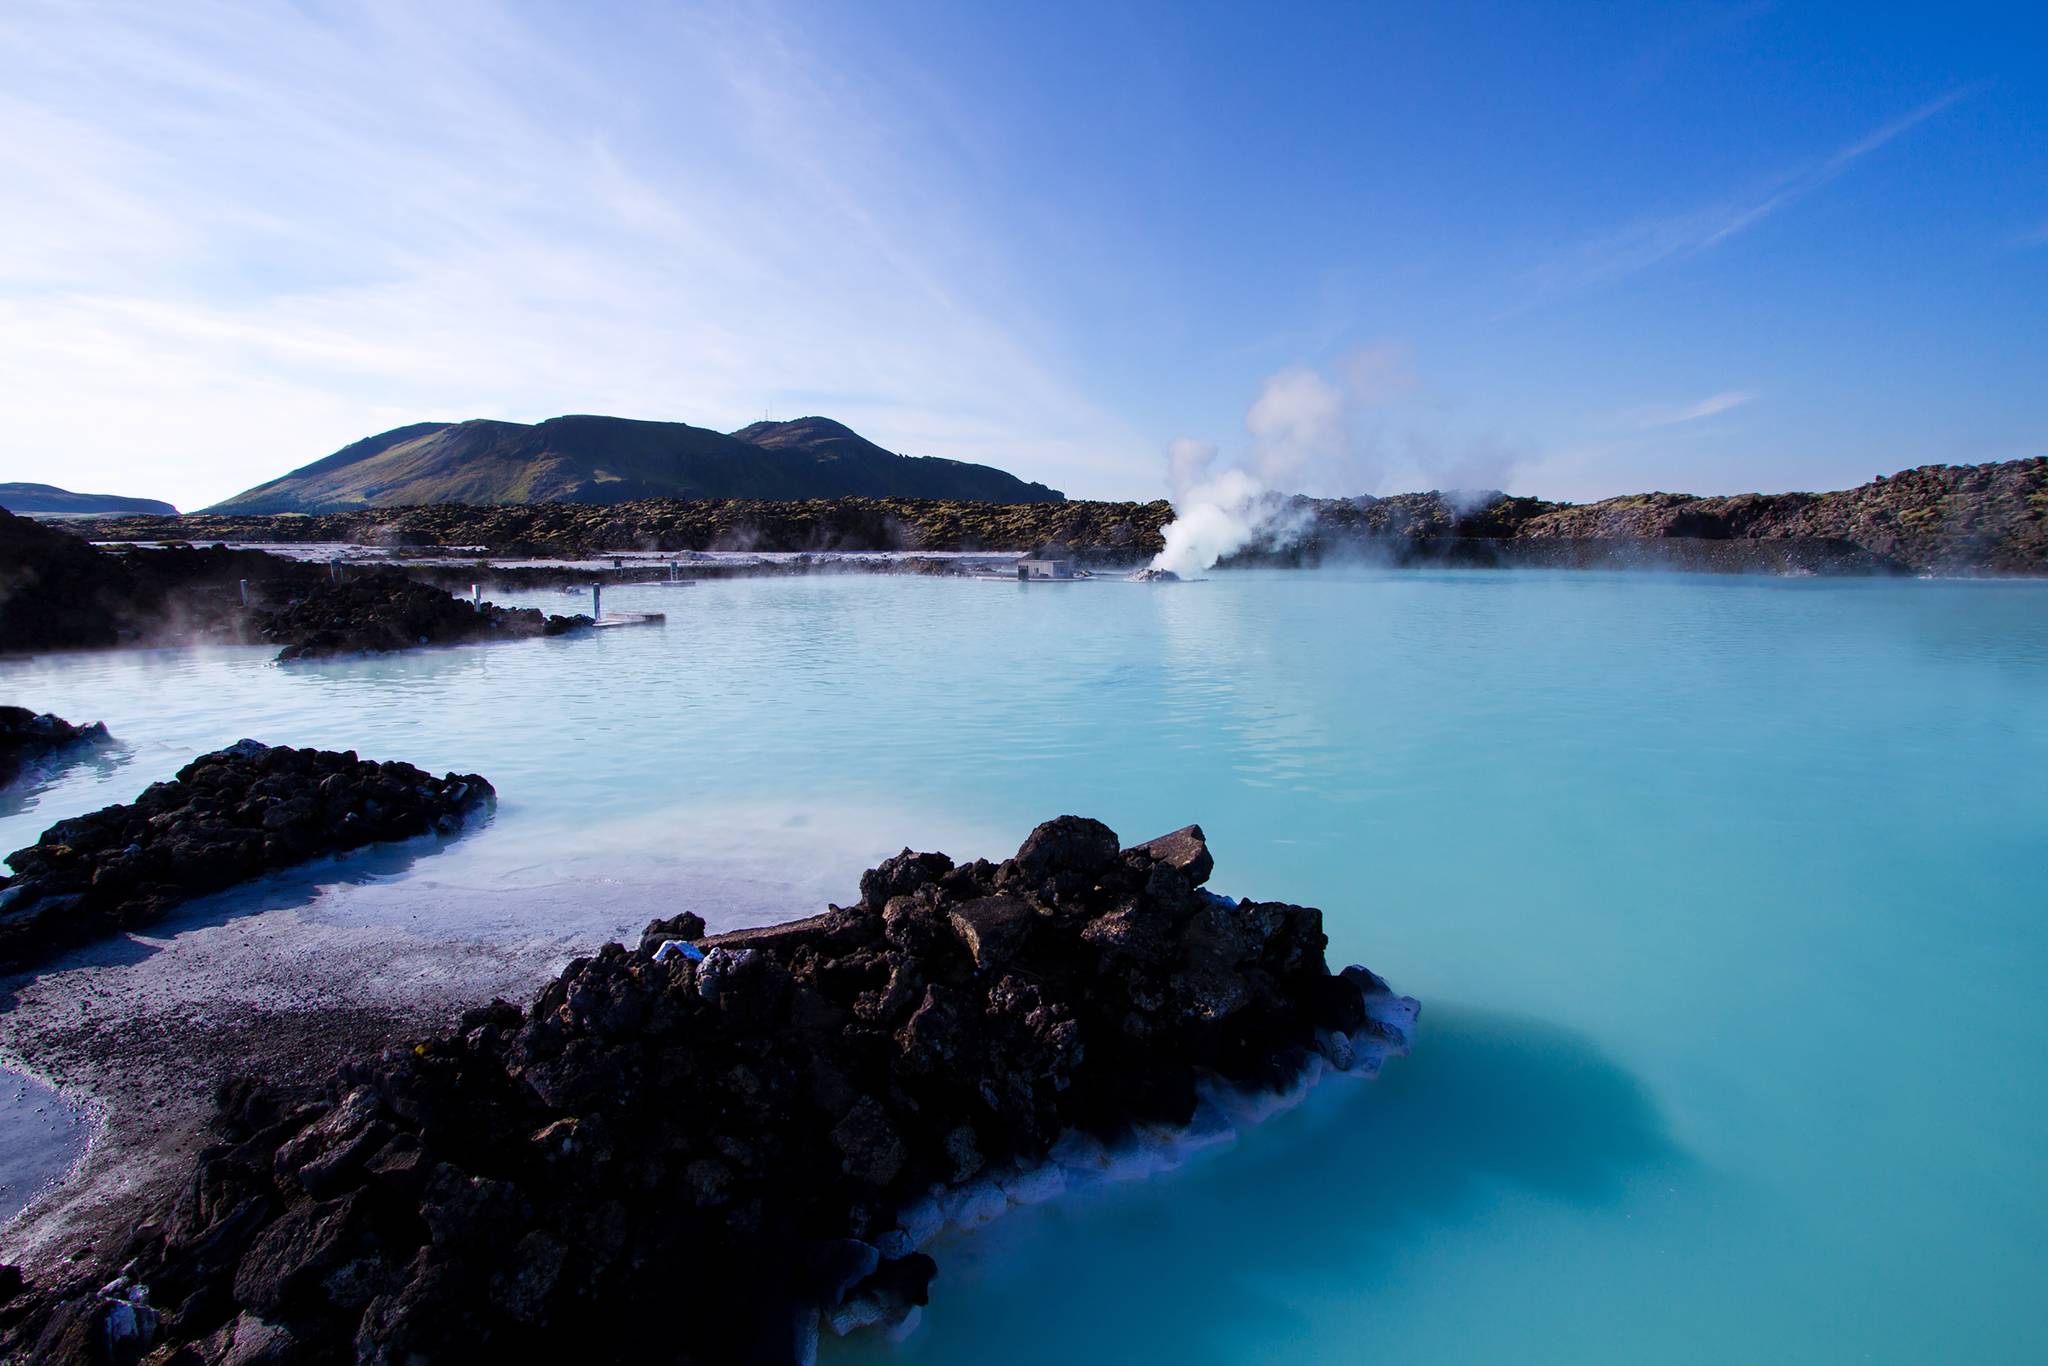 The science behind geothermal springs